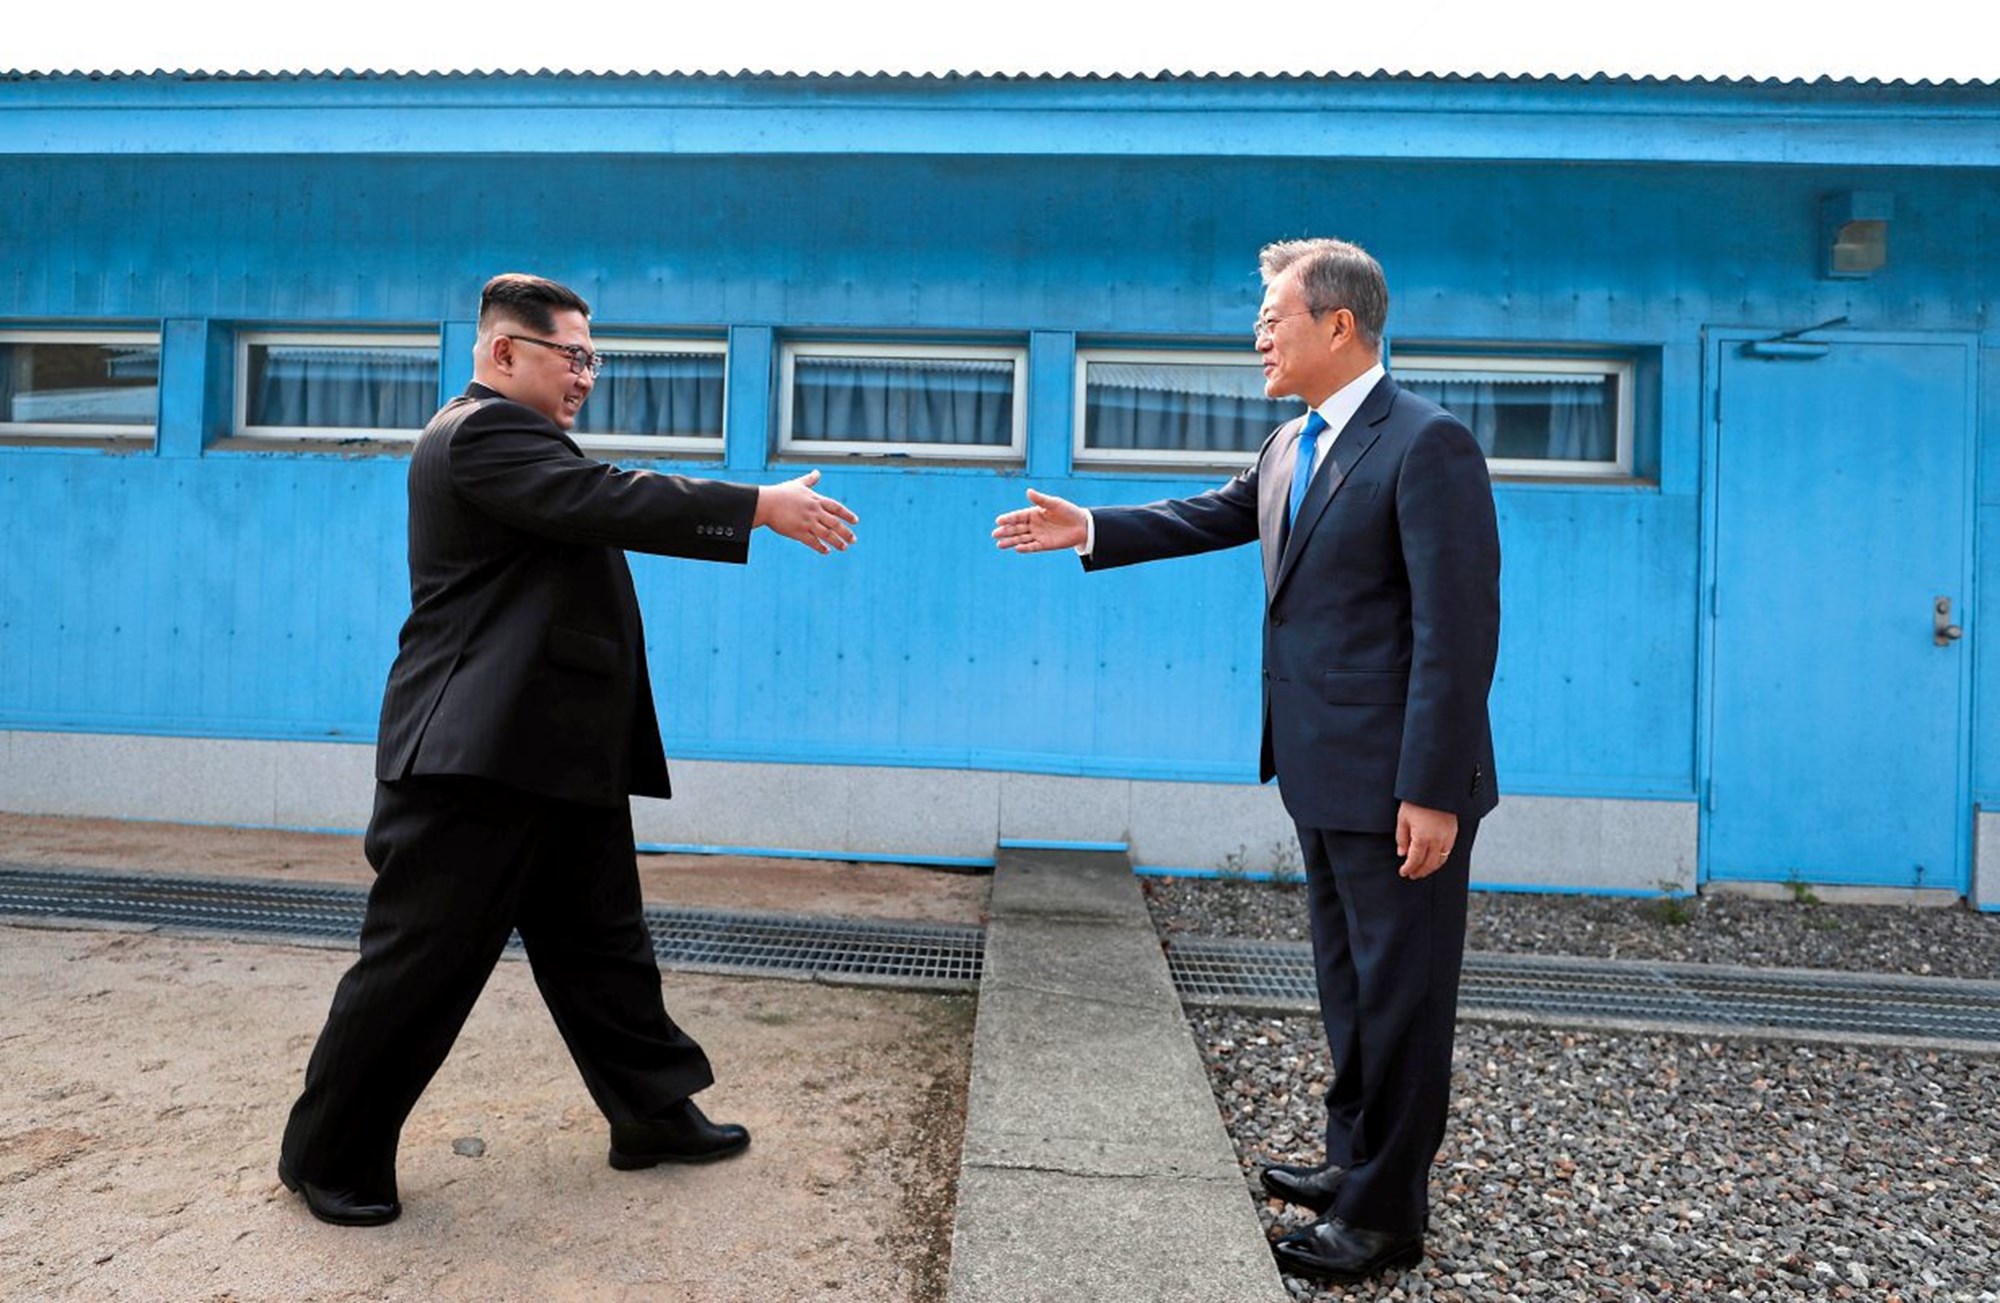 Korea-Summit-Press-Pool-via-AP.jpg